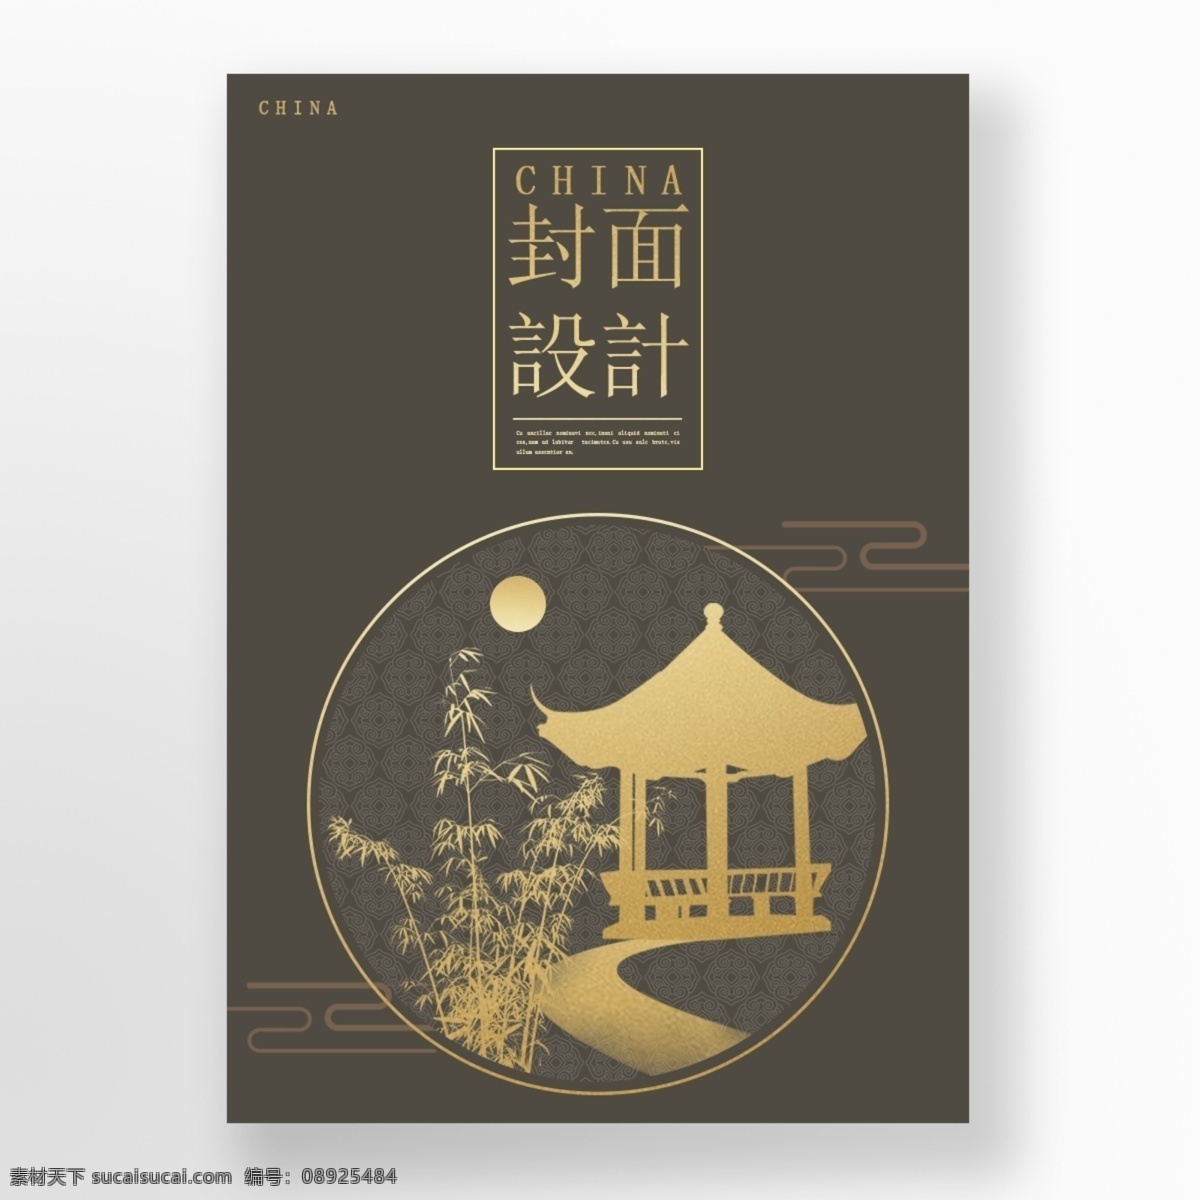 真 色 精巧 药 盖 中国 传统 海报 肝药 褐色 金色 盖子设计 深色